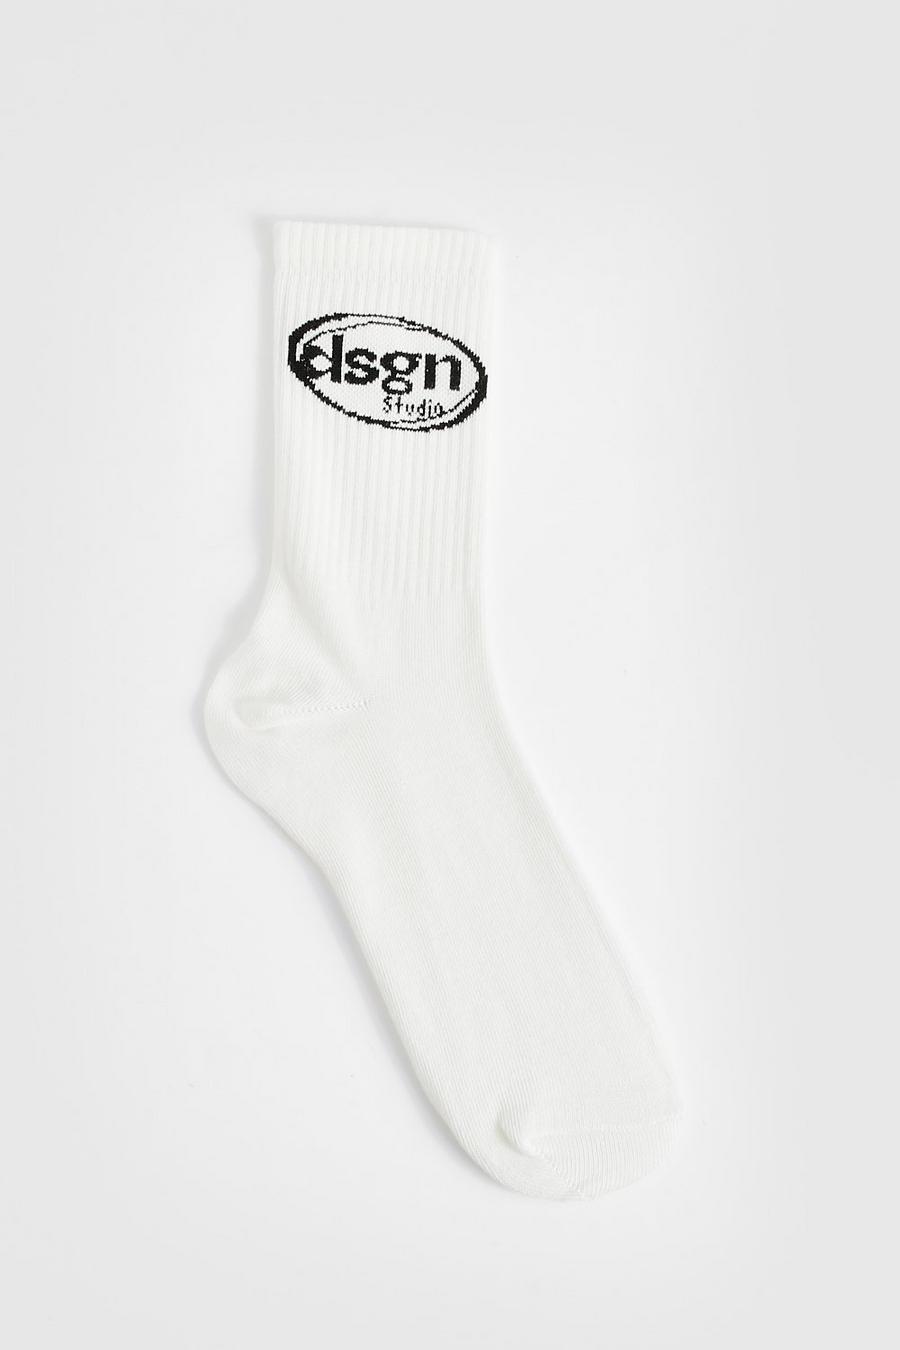 Calcetines deportivos con eslogan Dsgn Studio, Ecru